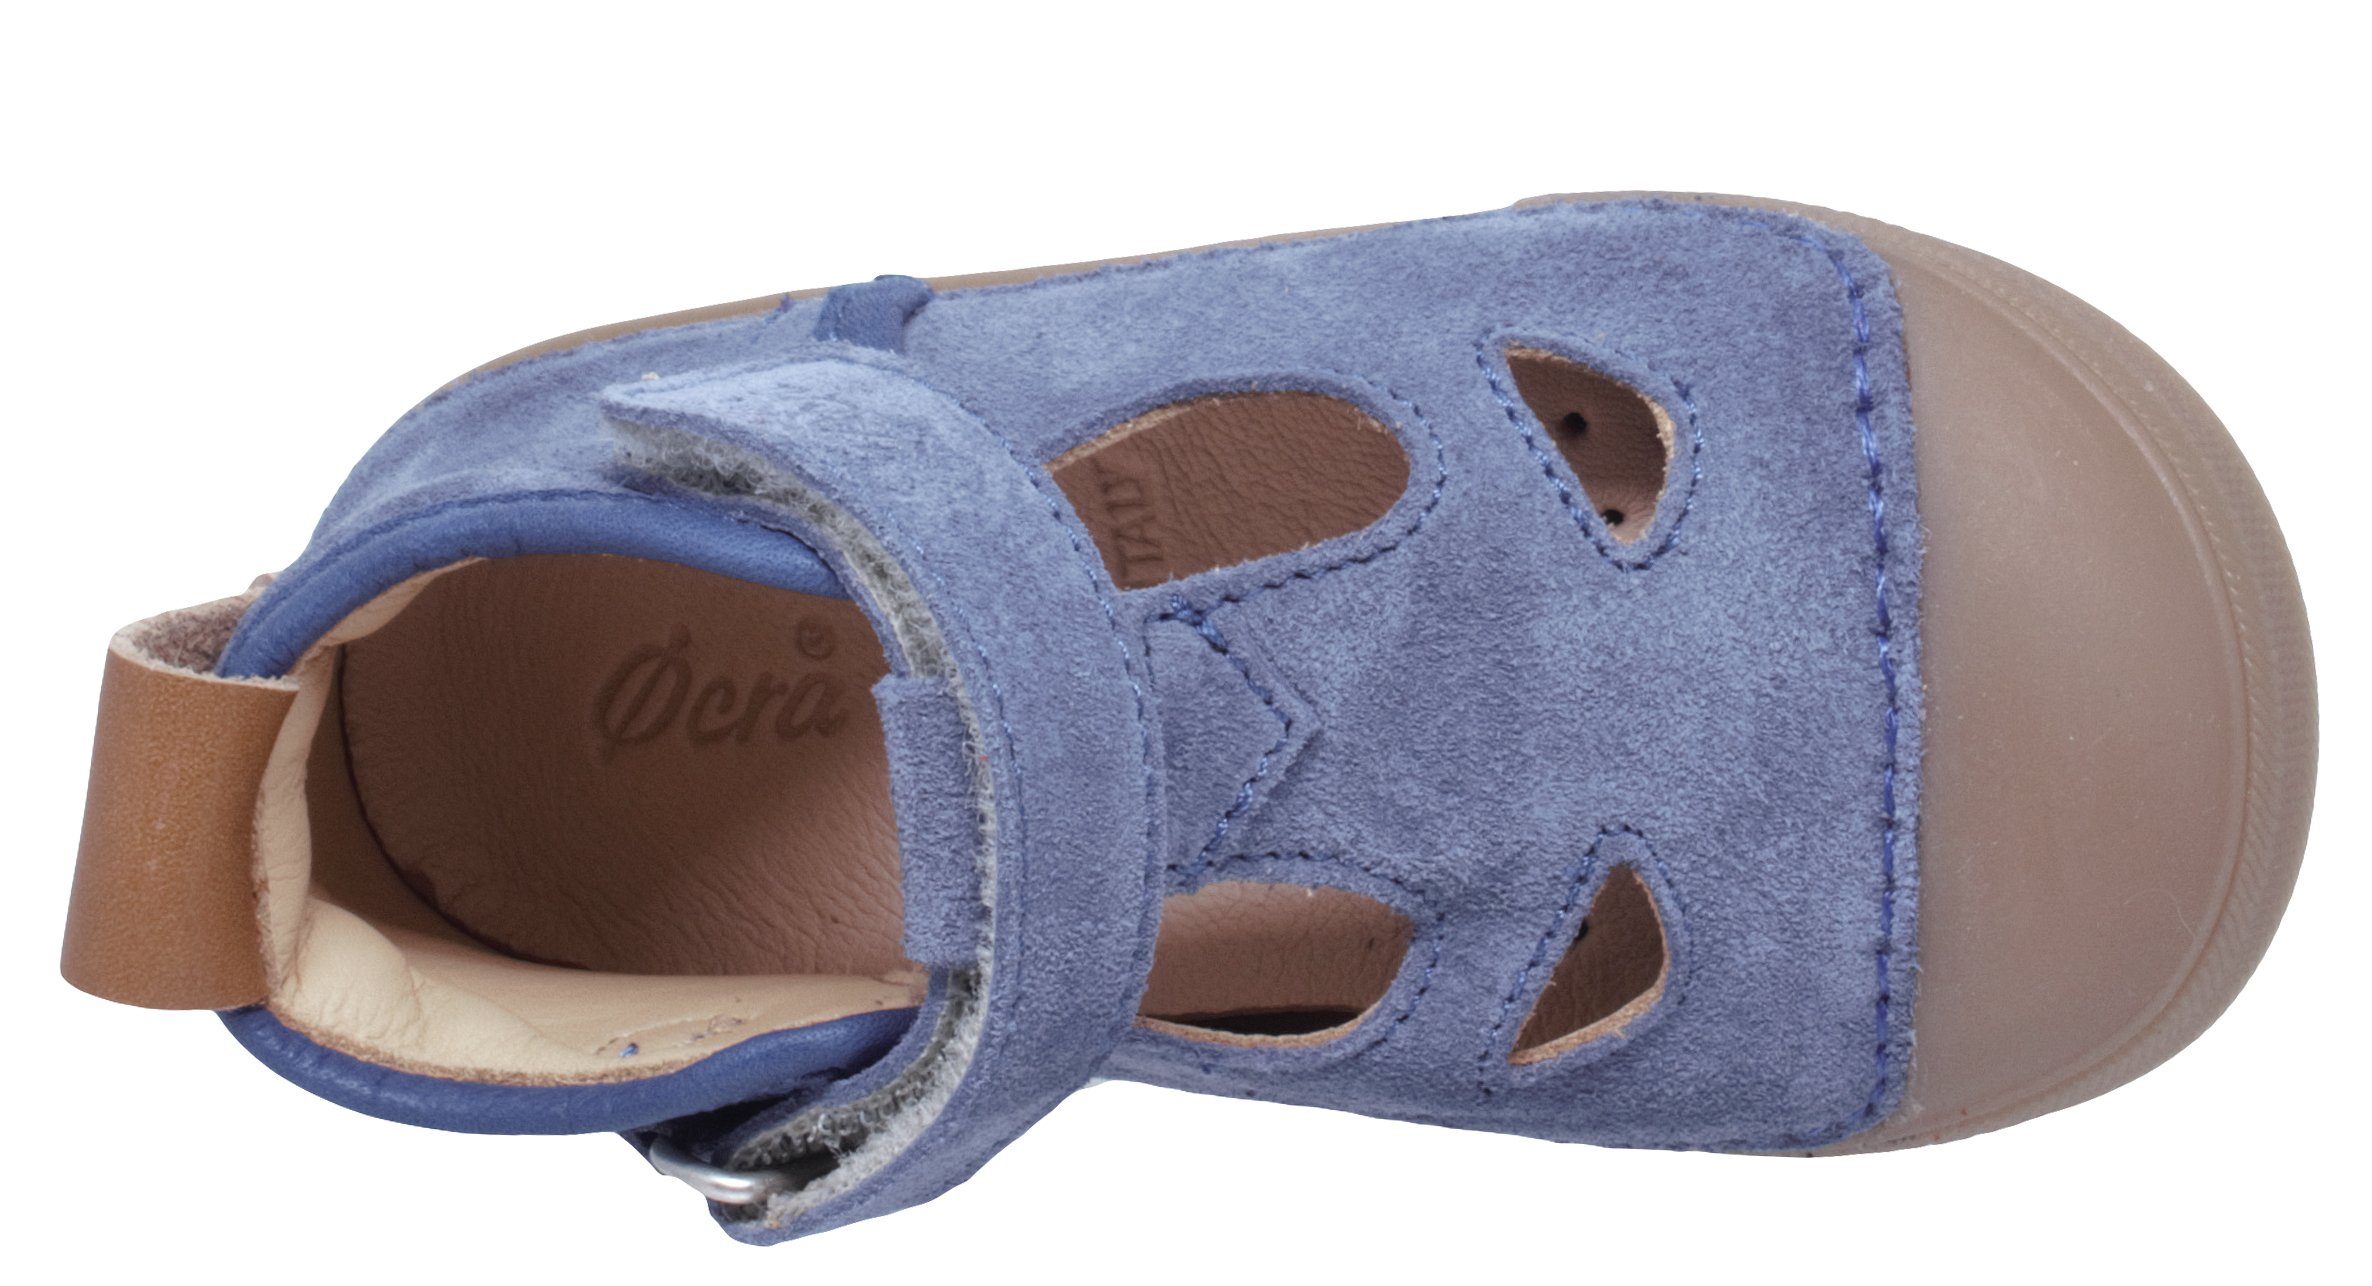 Ocra Sandalette Ocra Lauflernschuhe Sandalen Baby Leder Blau von 622 Klett